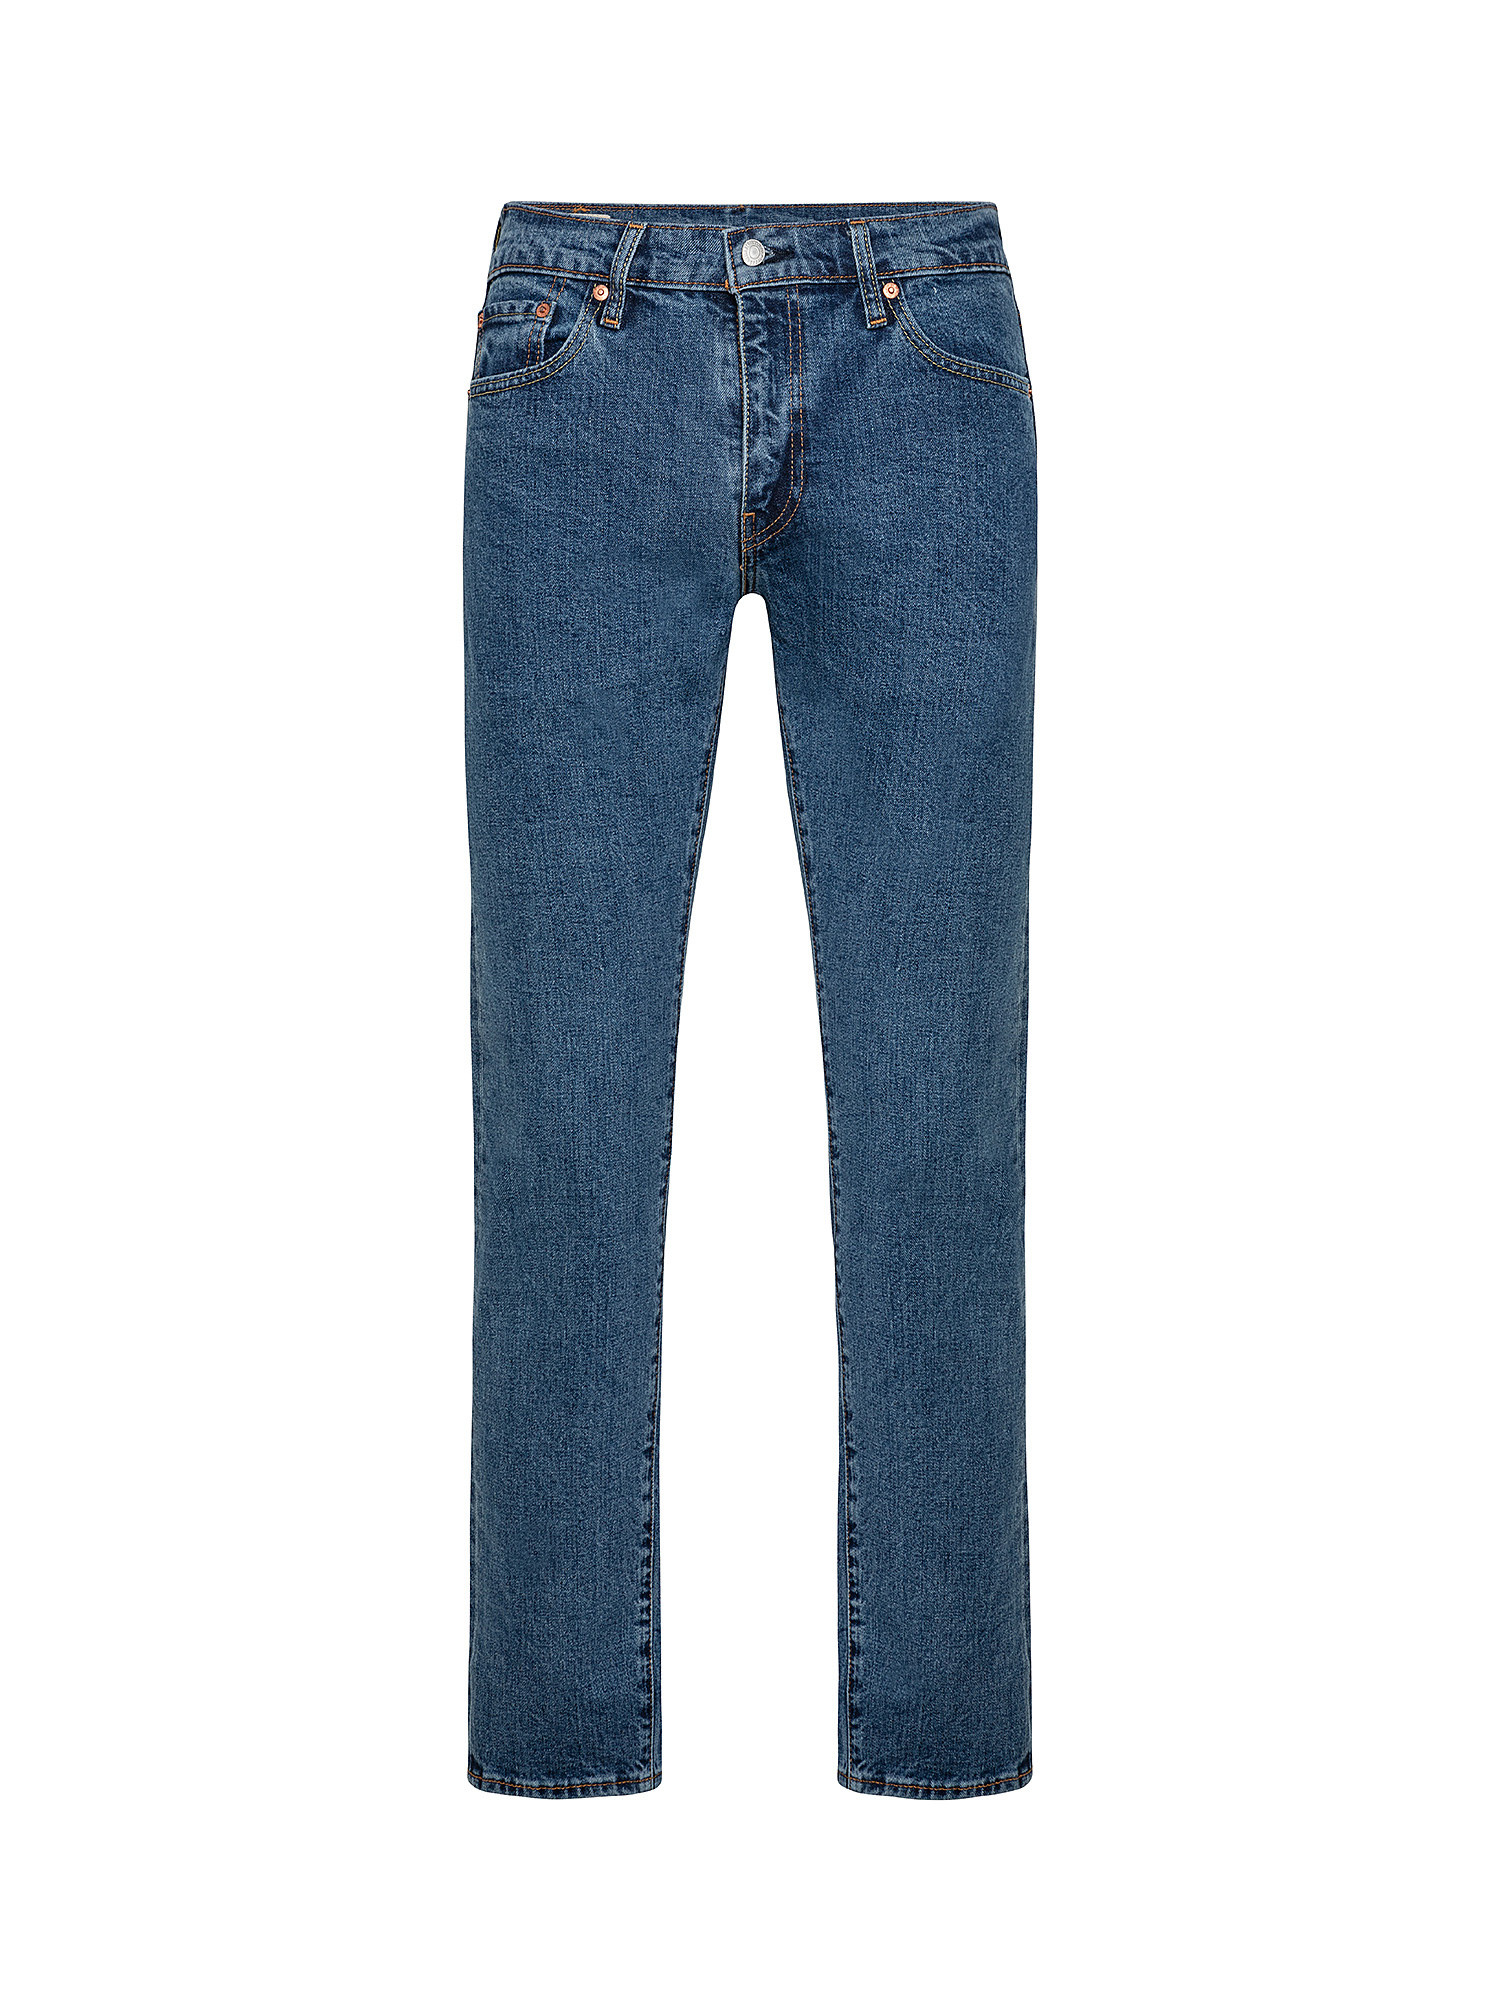 Five pocket jeans, Blue, large image number 0